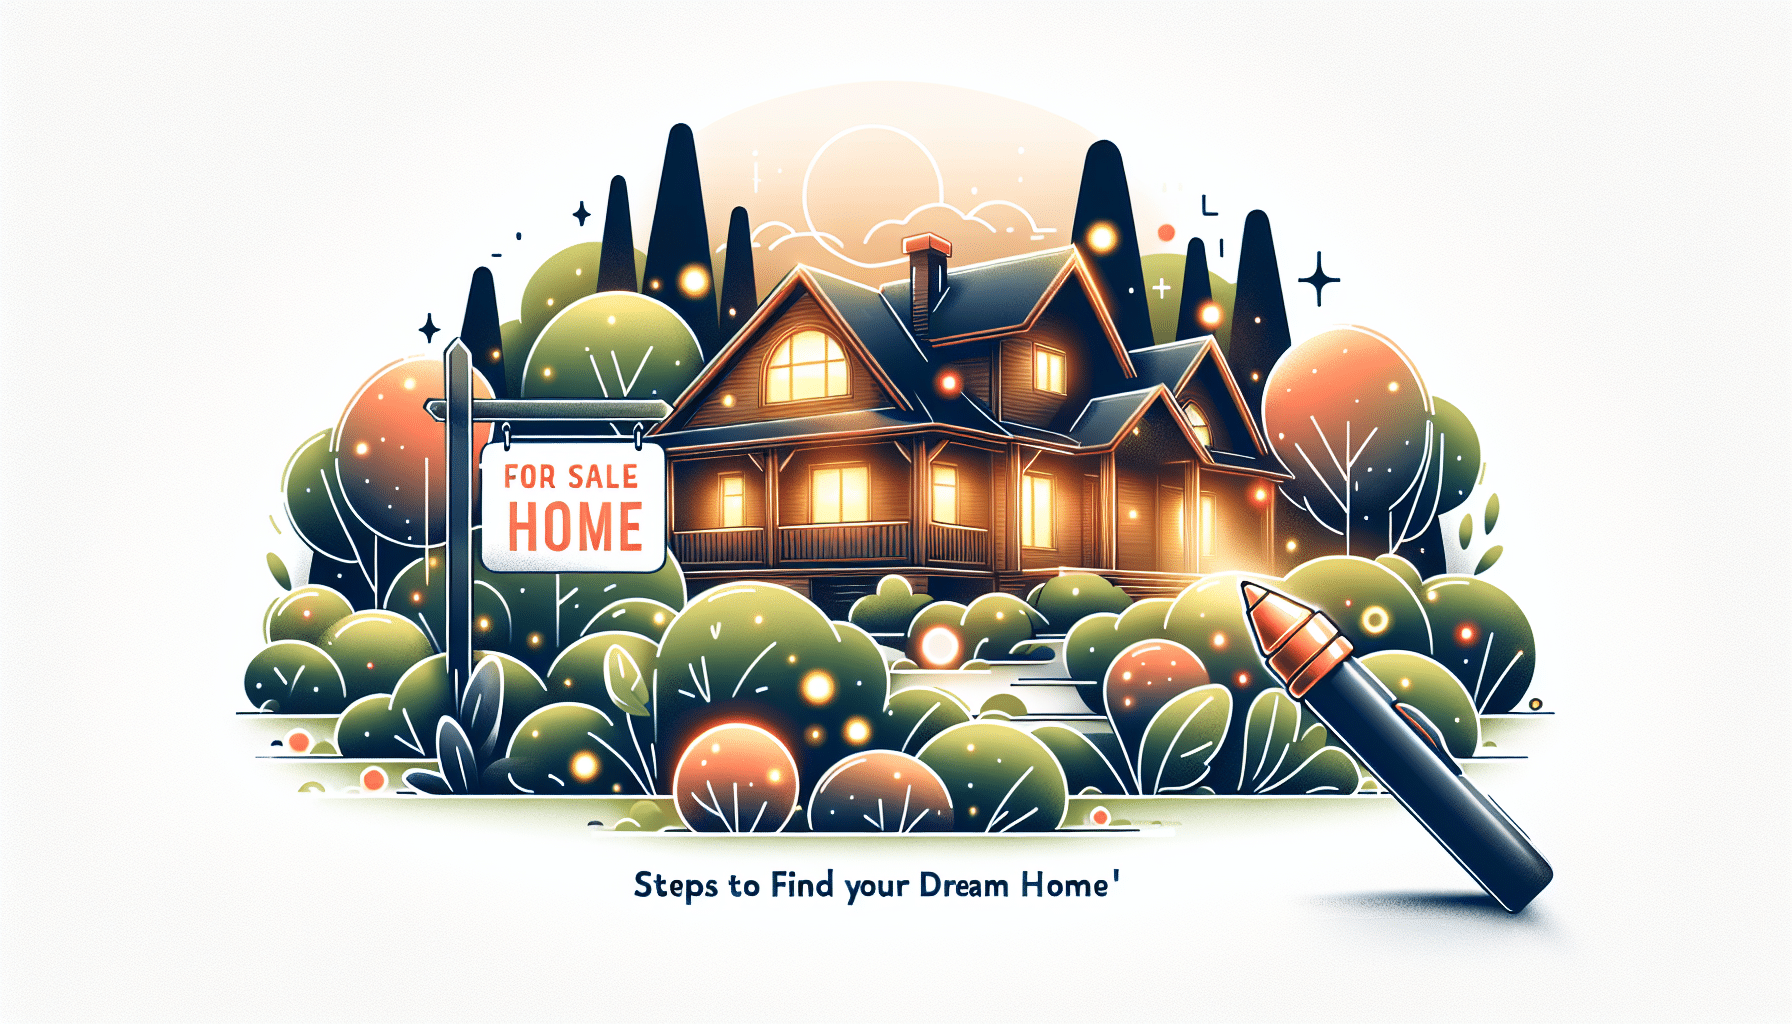 découvrez en 5 étapes simples comment trouver la maison de vos rêves grâce à nos conseils en immobilier.